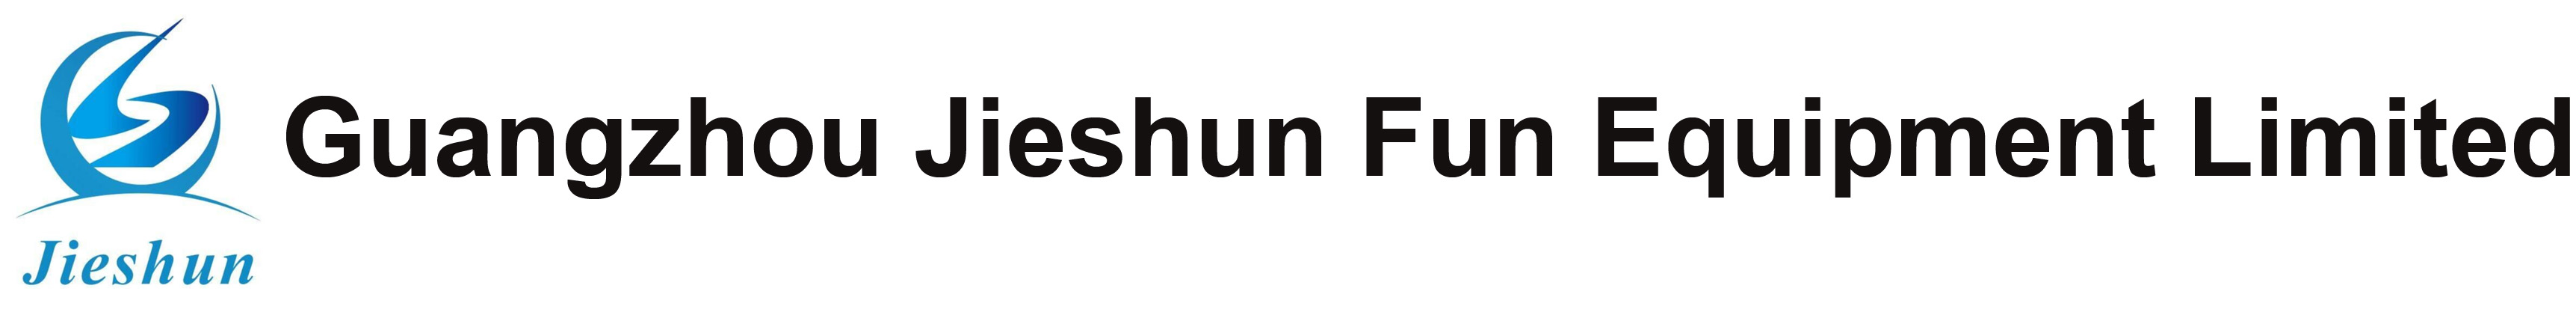 Guangzhou Jieshun Fun Equipment Limited